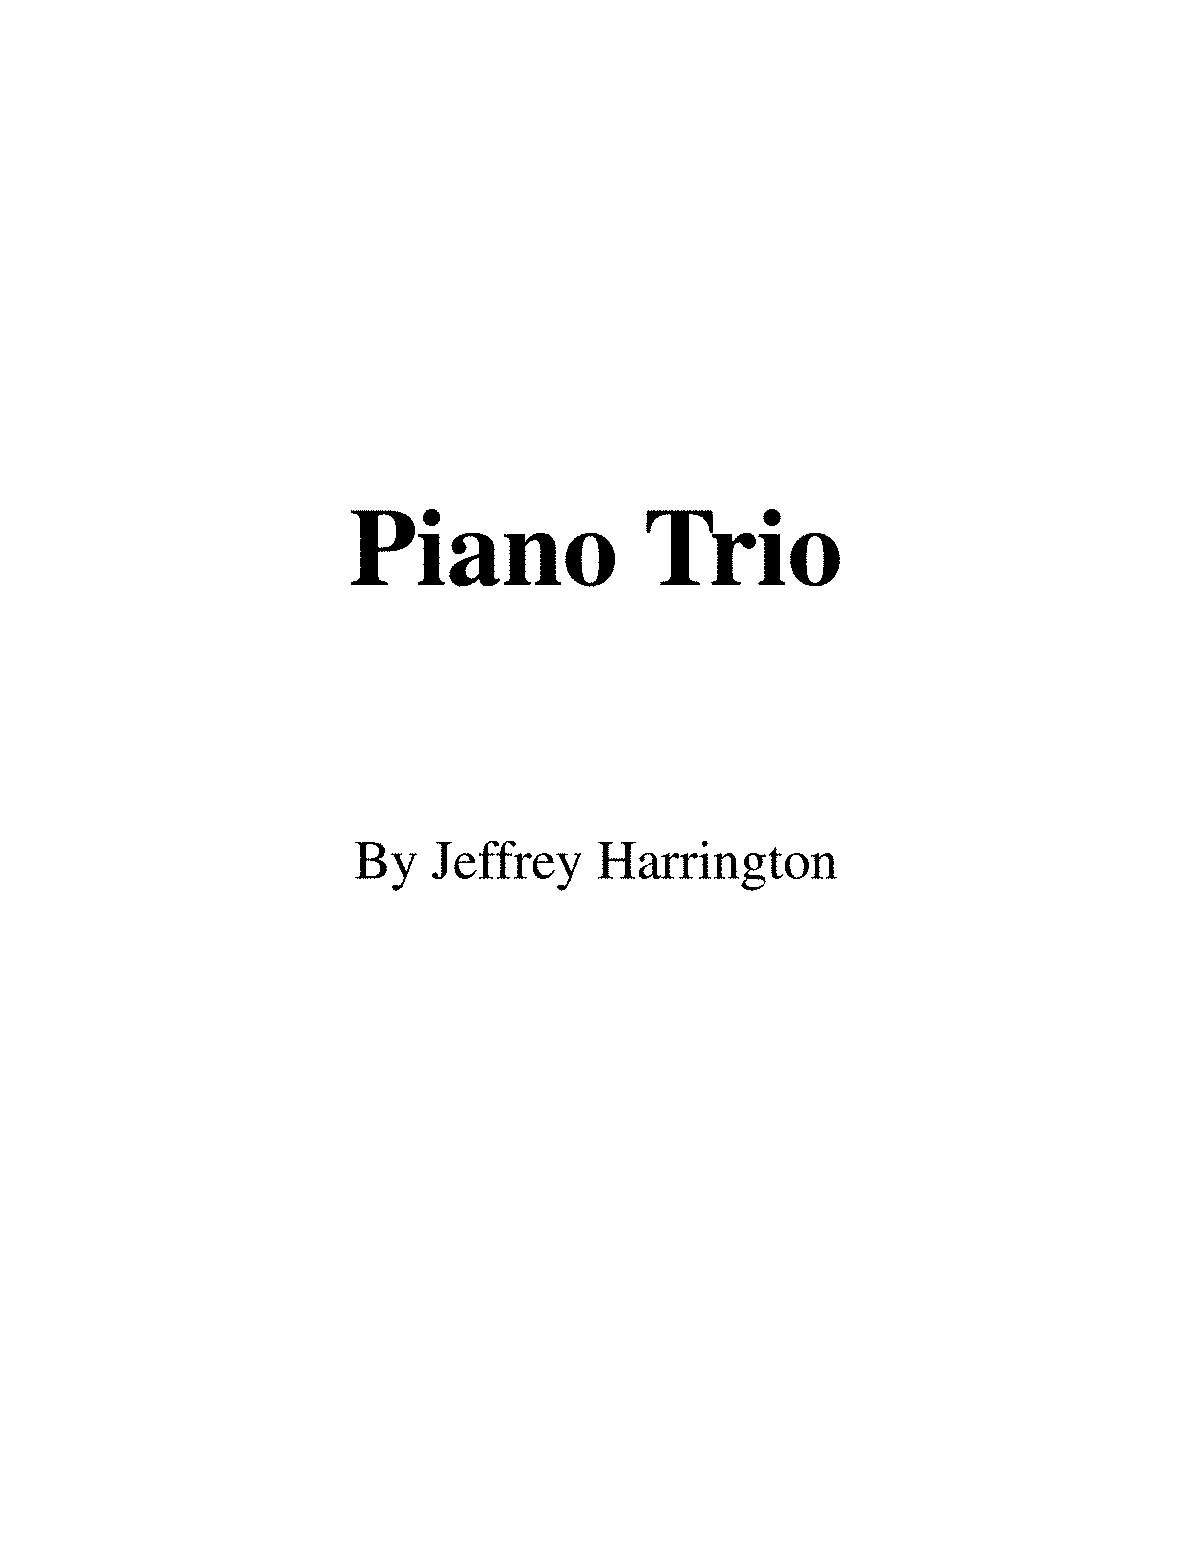 e.g. harrington 66000 piano value